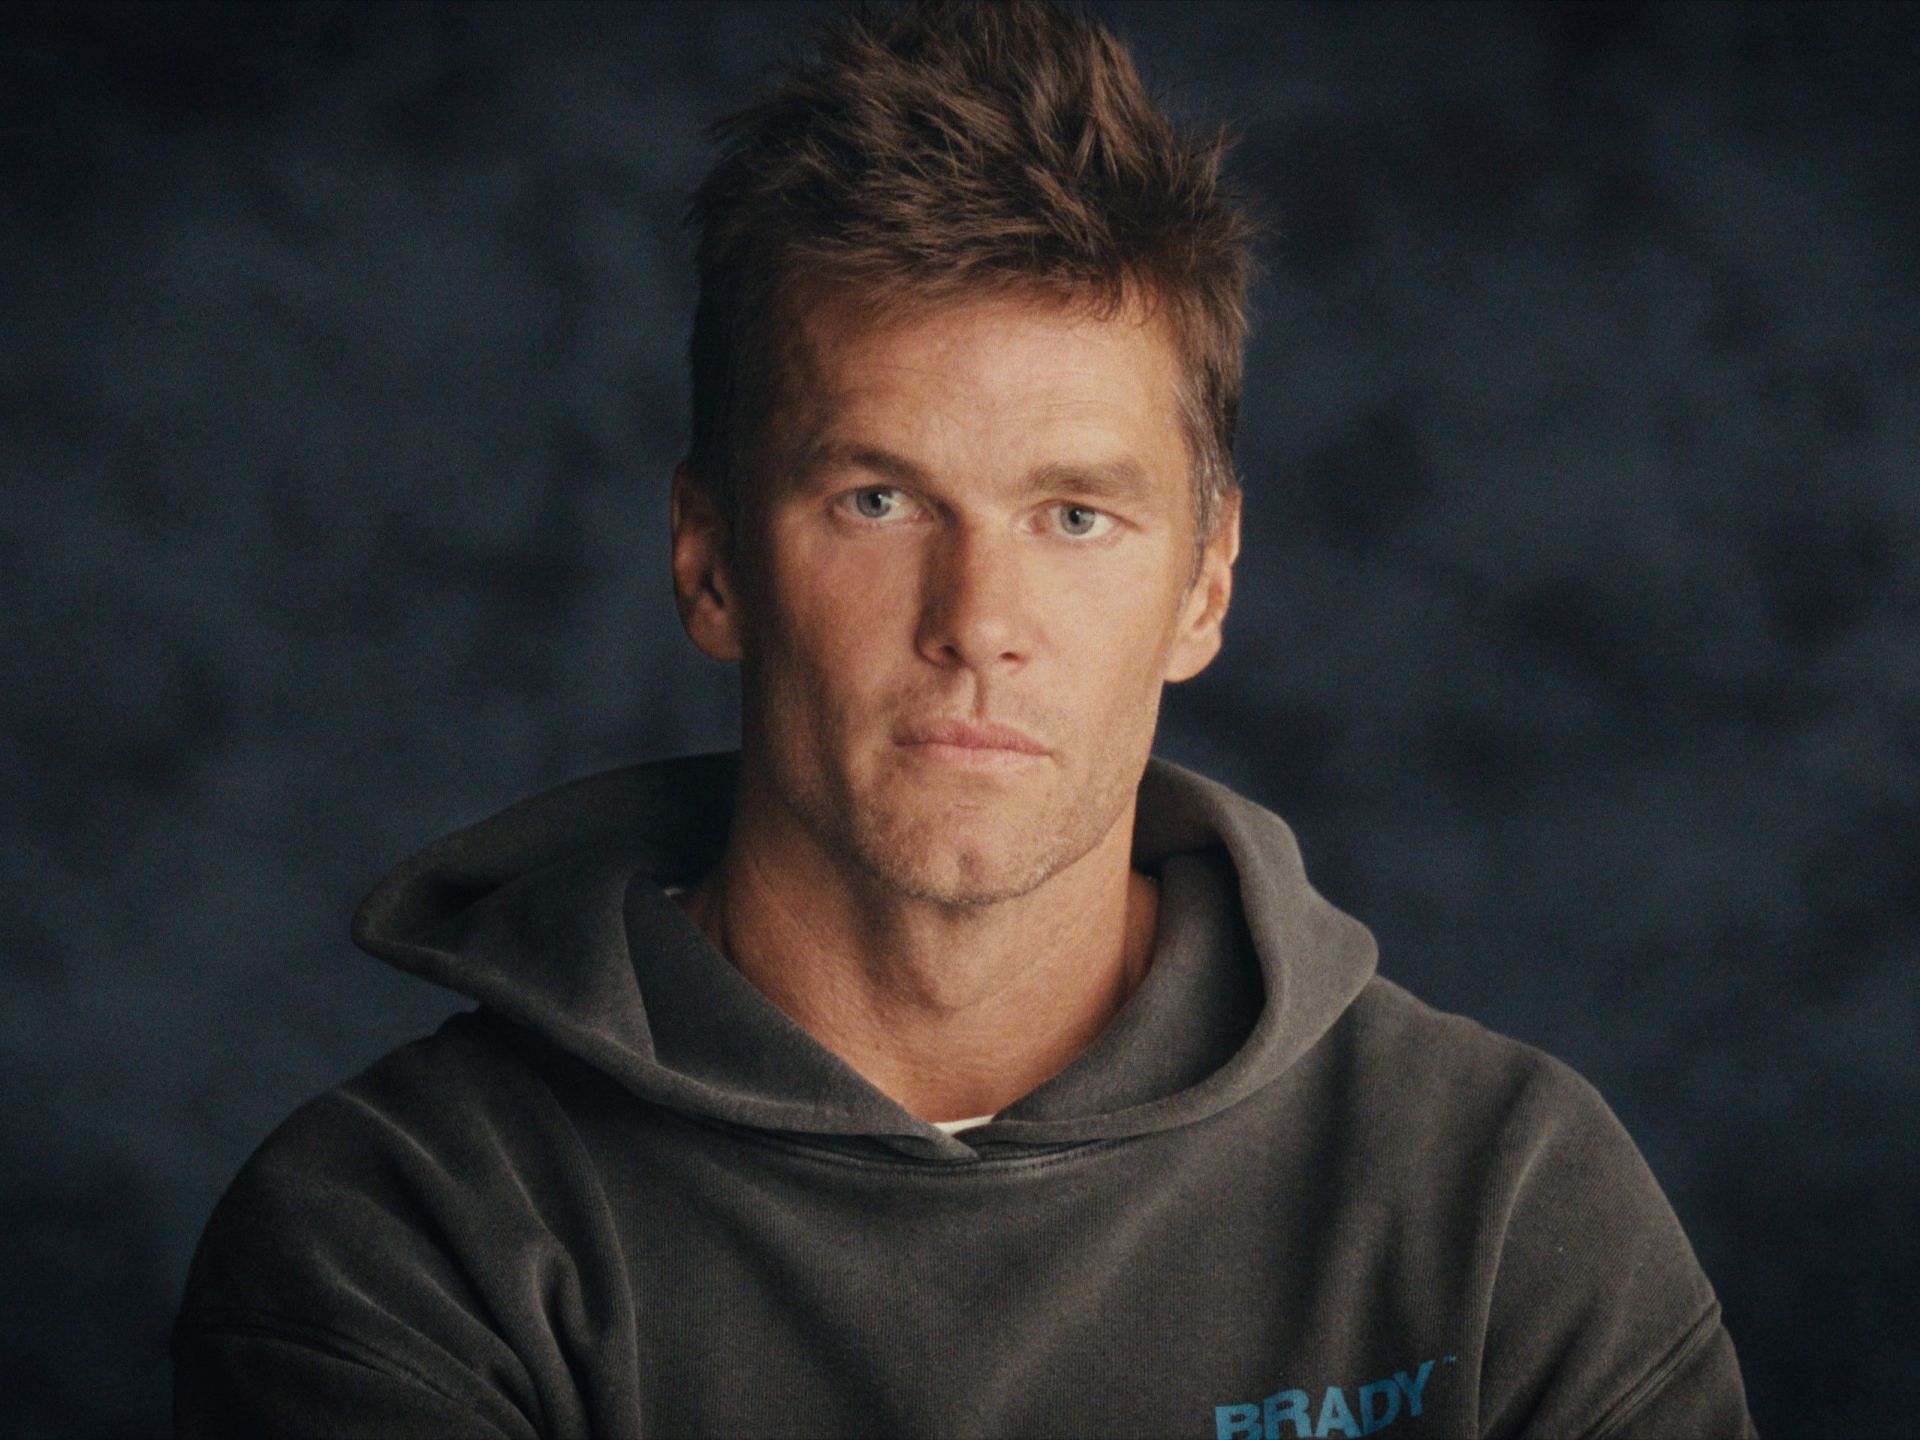 Tom Brady in The Dynasty: New England Patriots (image via Apple TV+)